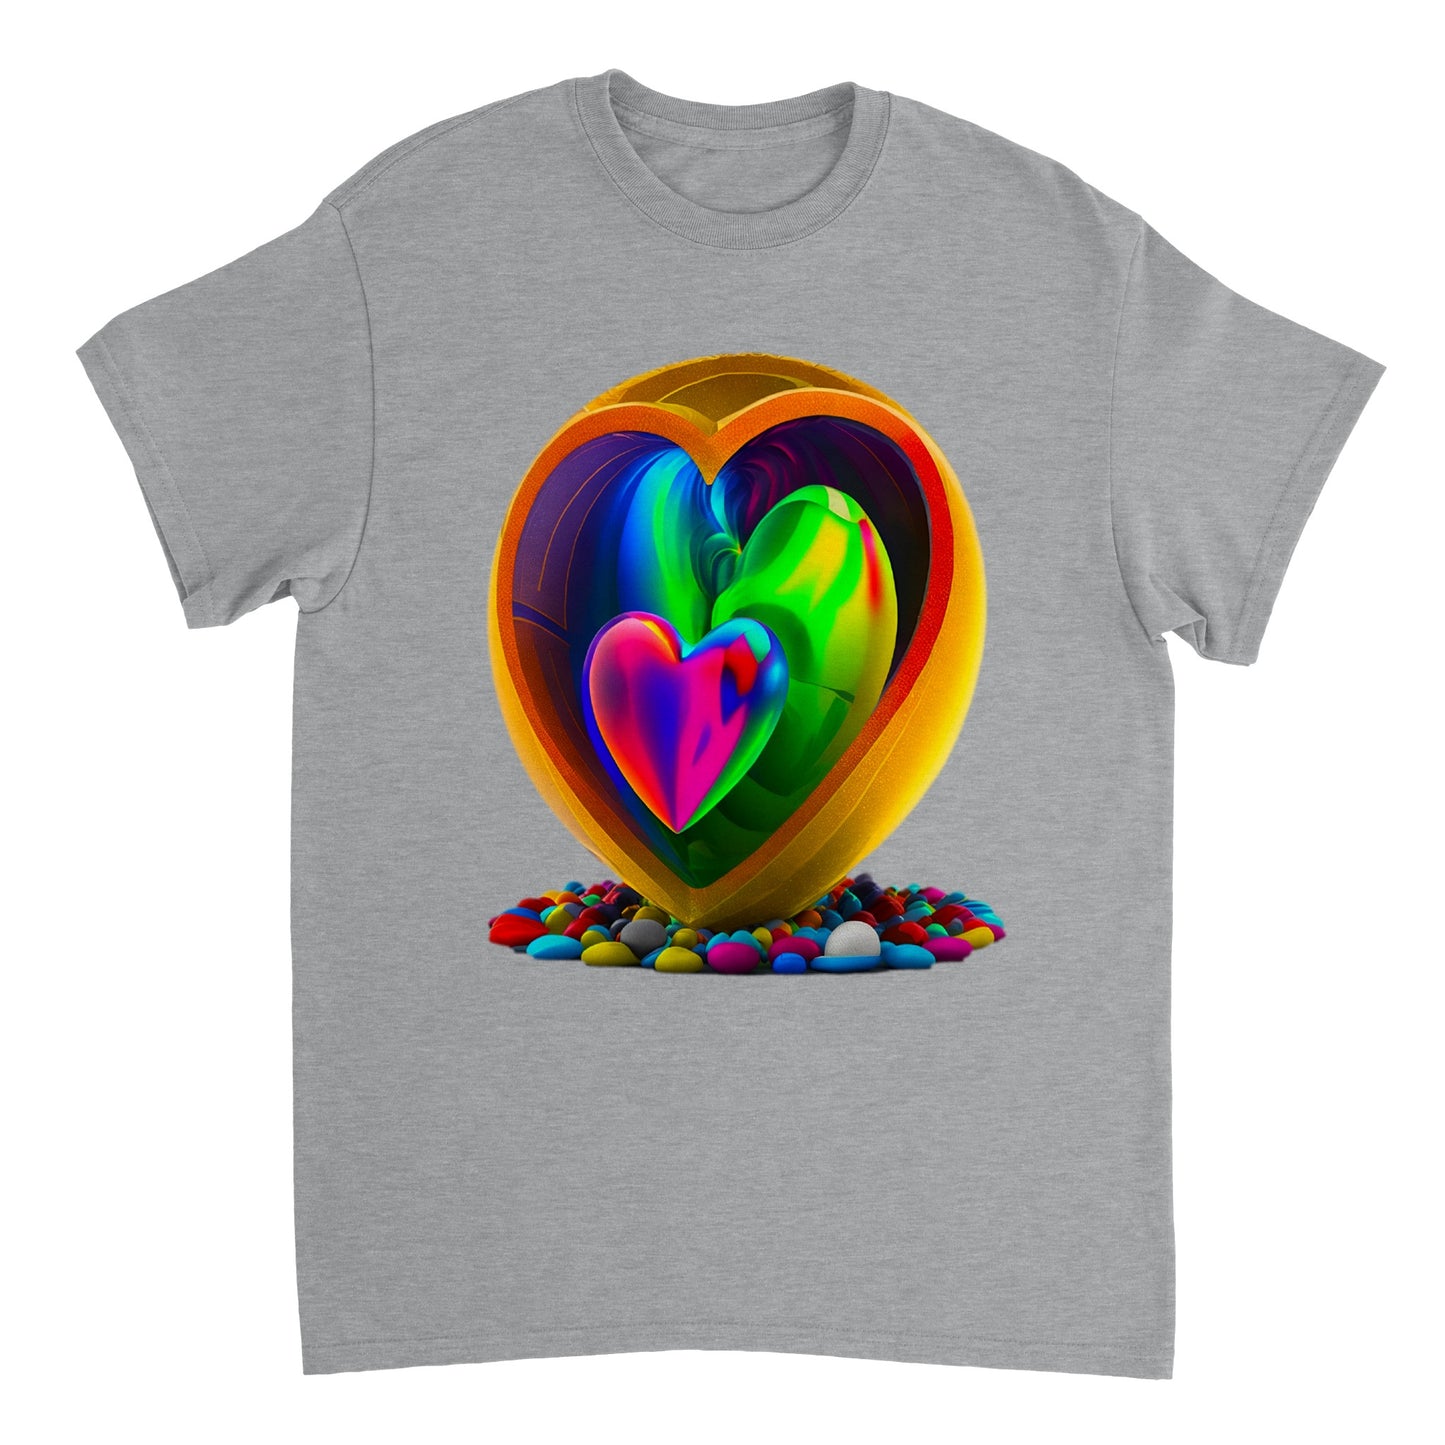 Love Heart - Heavyweight Unisex Crewneck T-shirt 107